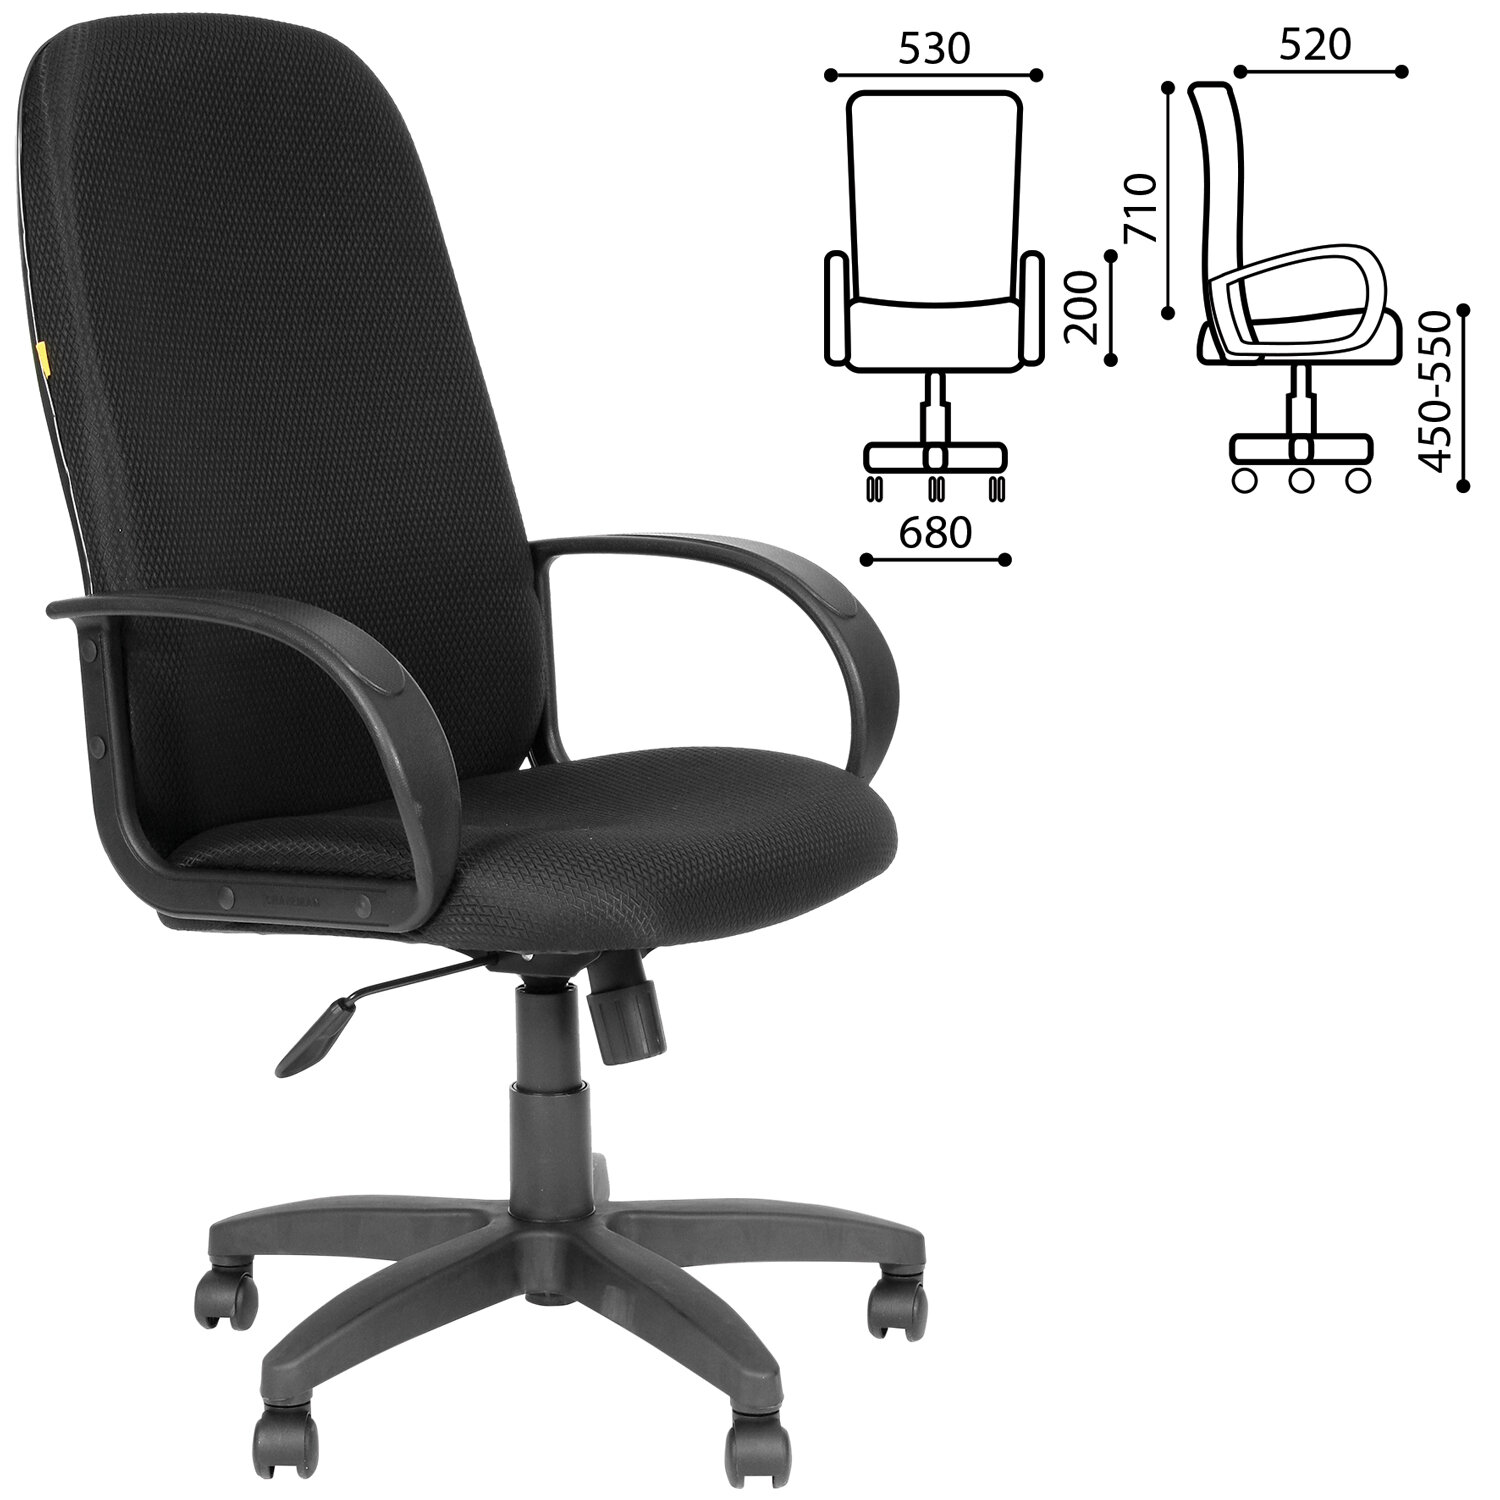 Кресло офисное СН 279, высокая спинка, с подлокотниками, черное, 1138105